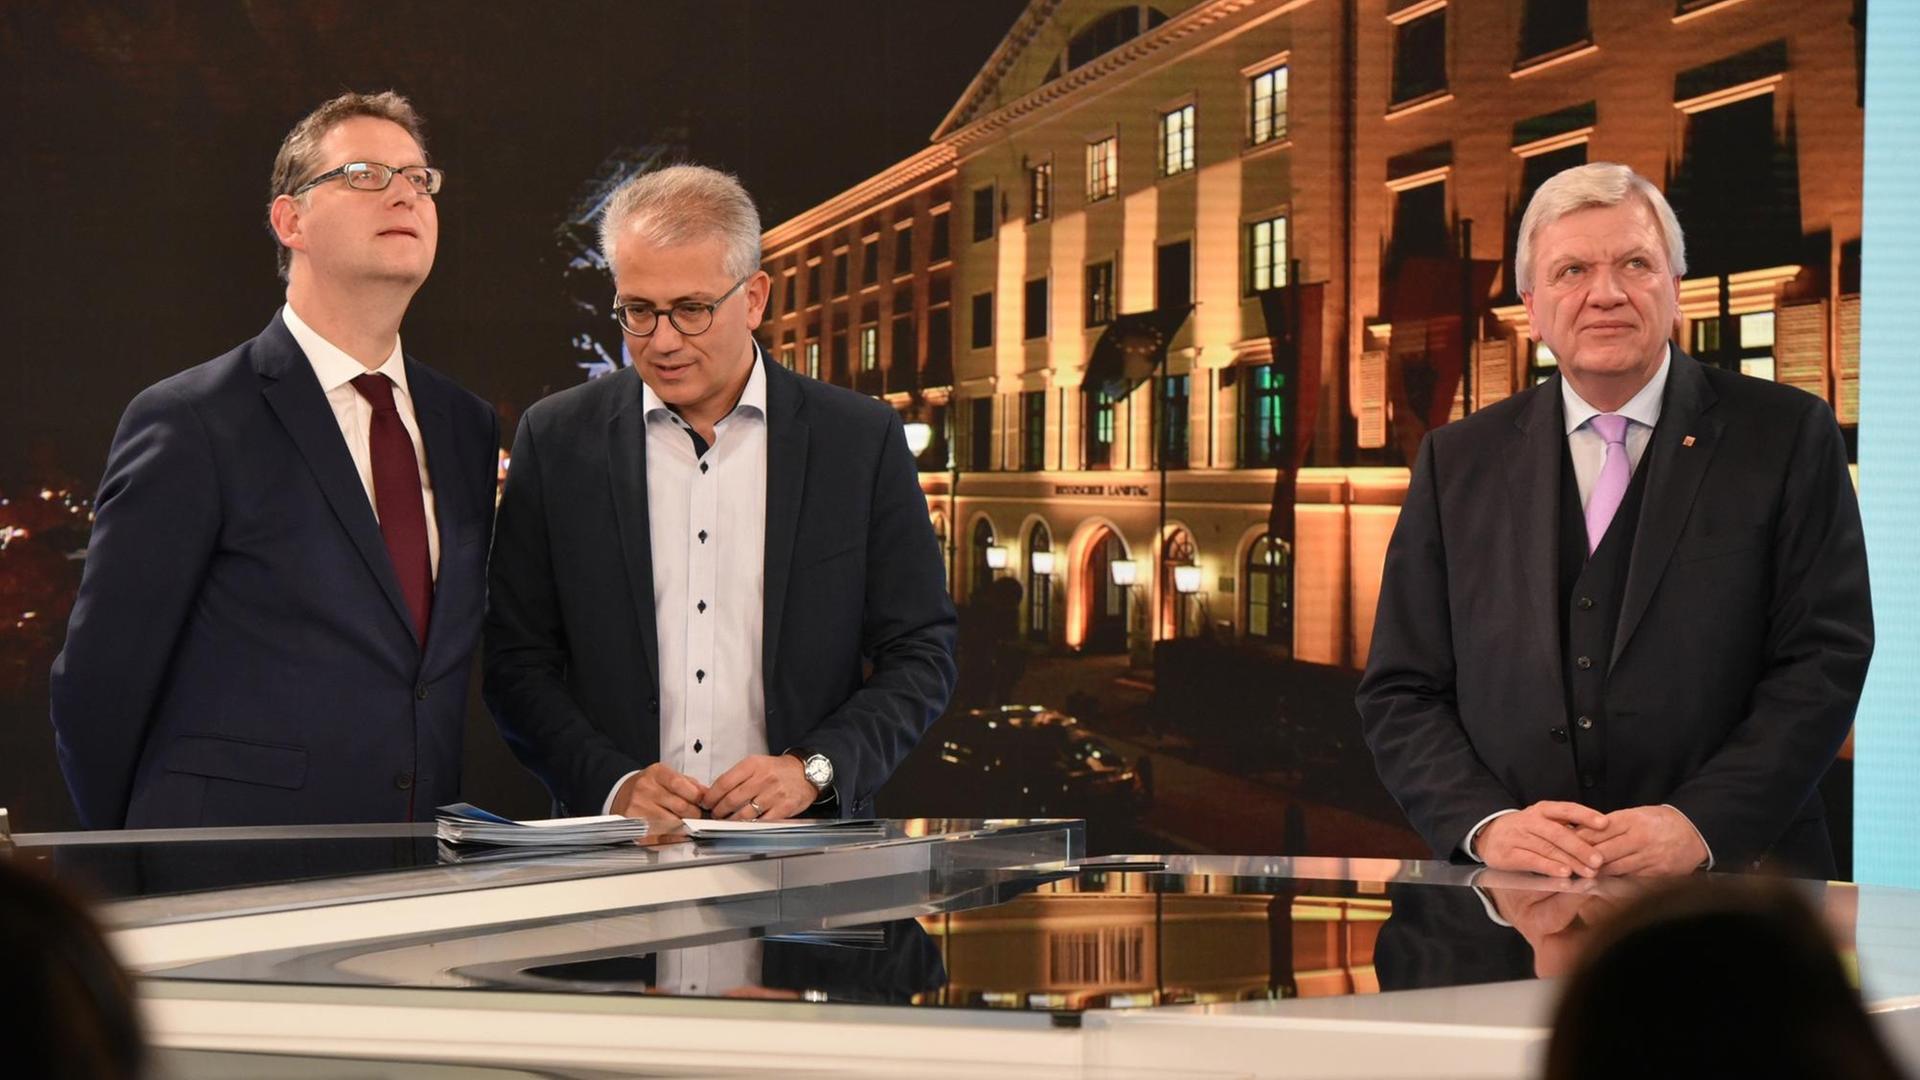 Die Spitzenkandidaten der Parteien, Thorsten Schäfer-Gümbel (SPD), Tarek Al-Wazir (Bündnis90/Die Grünen) und Volker Bouffier (CDU), Ministerpräsident von Hessen, stehen während der HR-Fernsehrunde nebeneinander und schauen auf die Zahlen einer Hochrechnung.